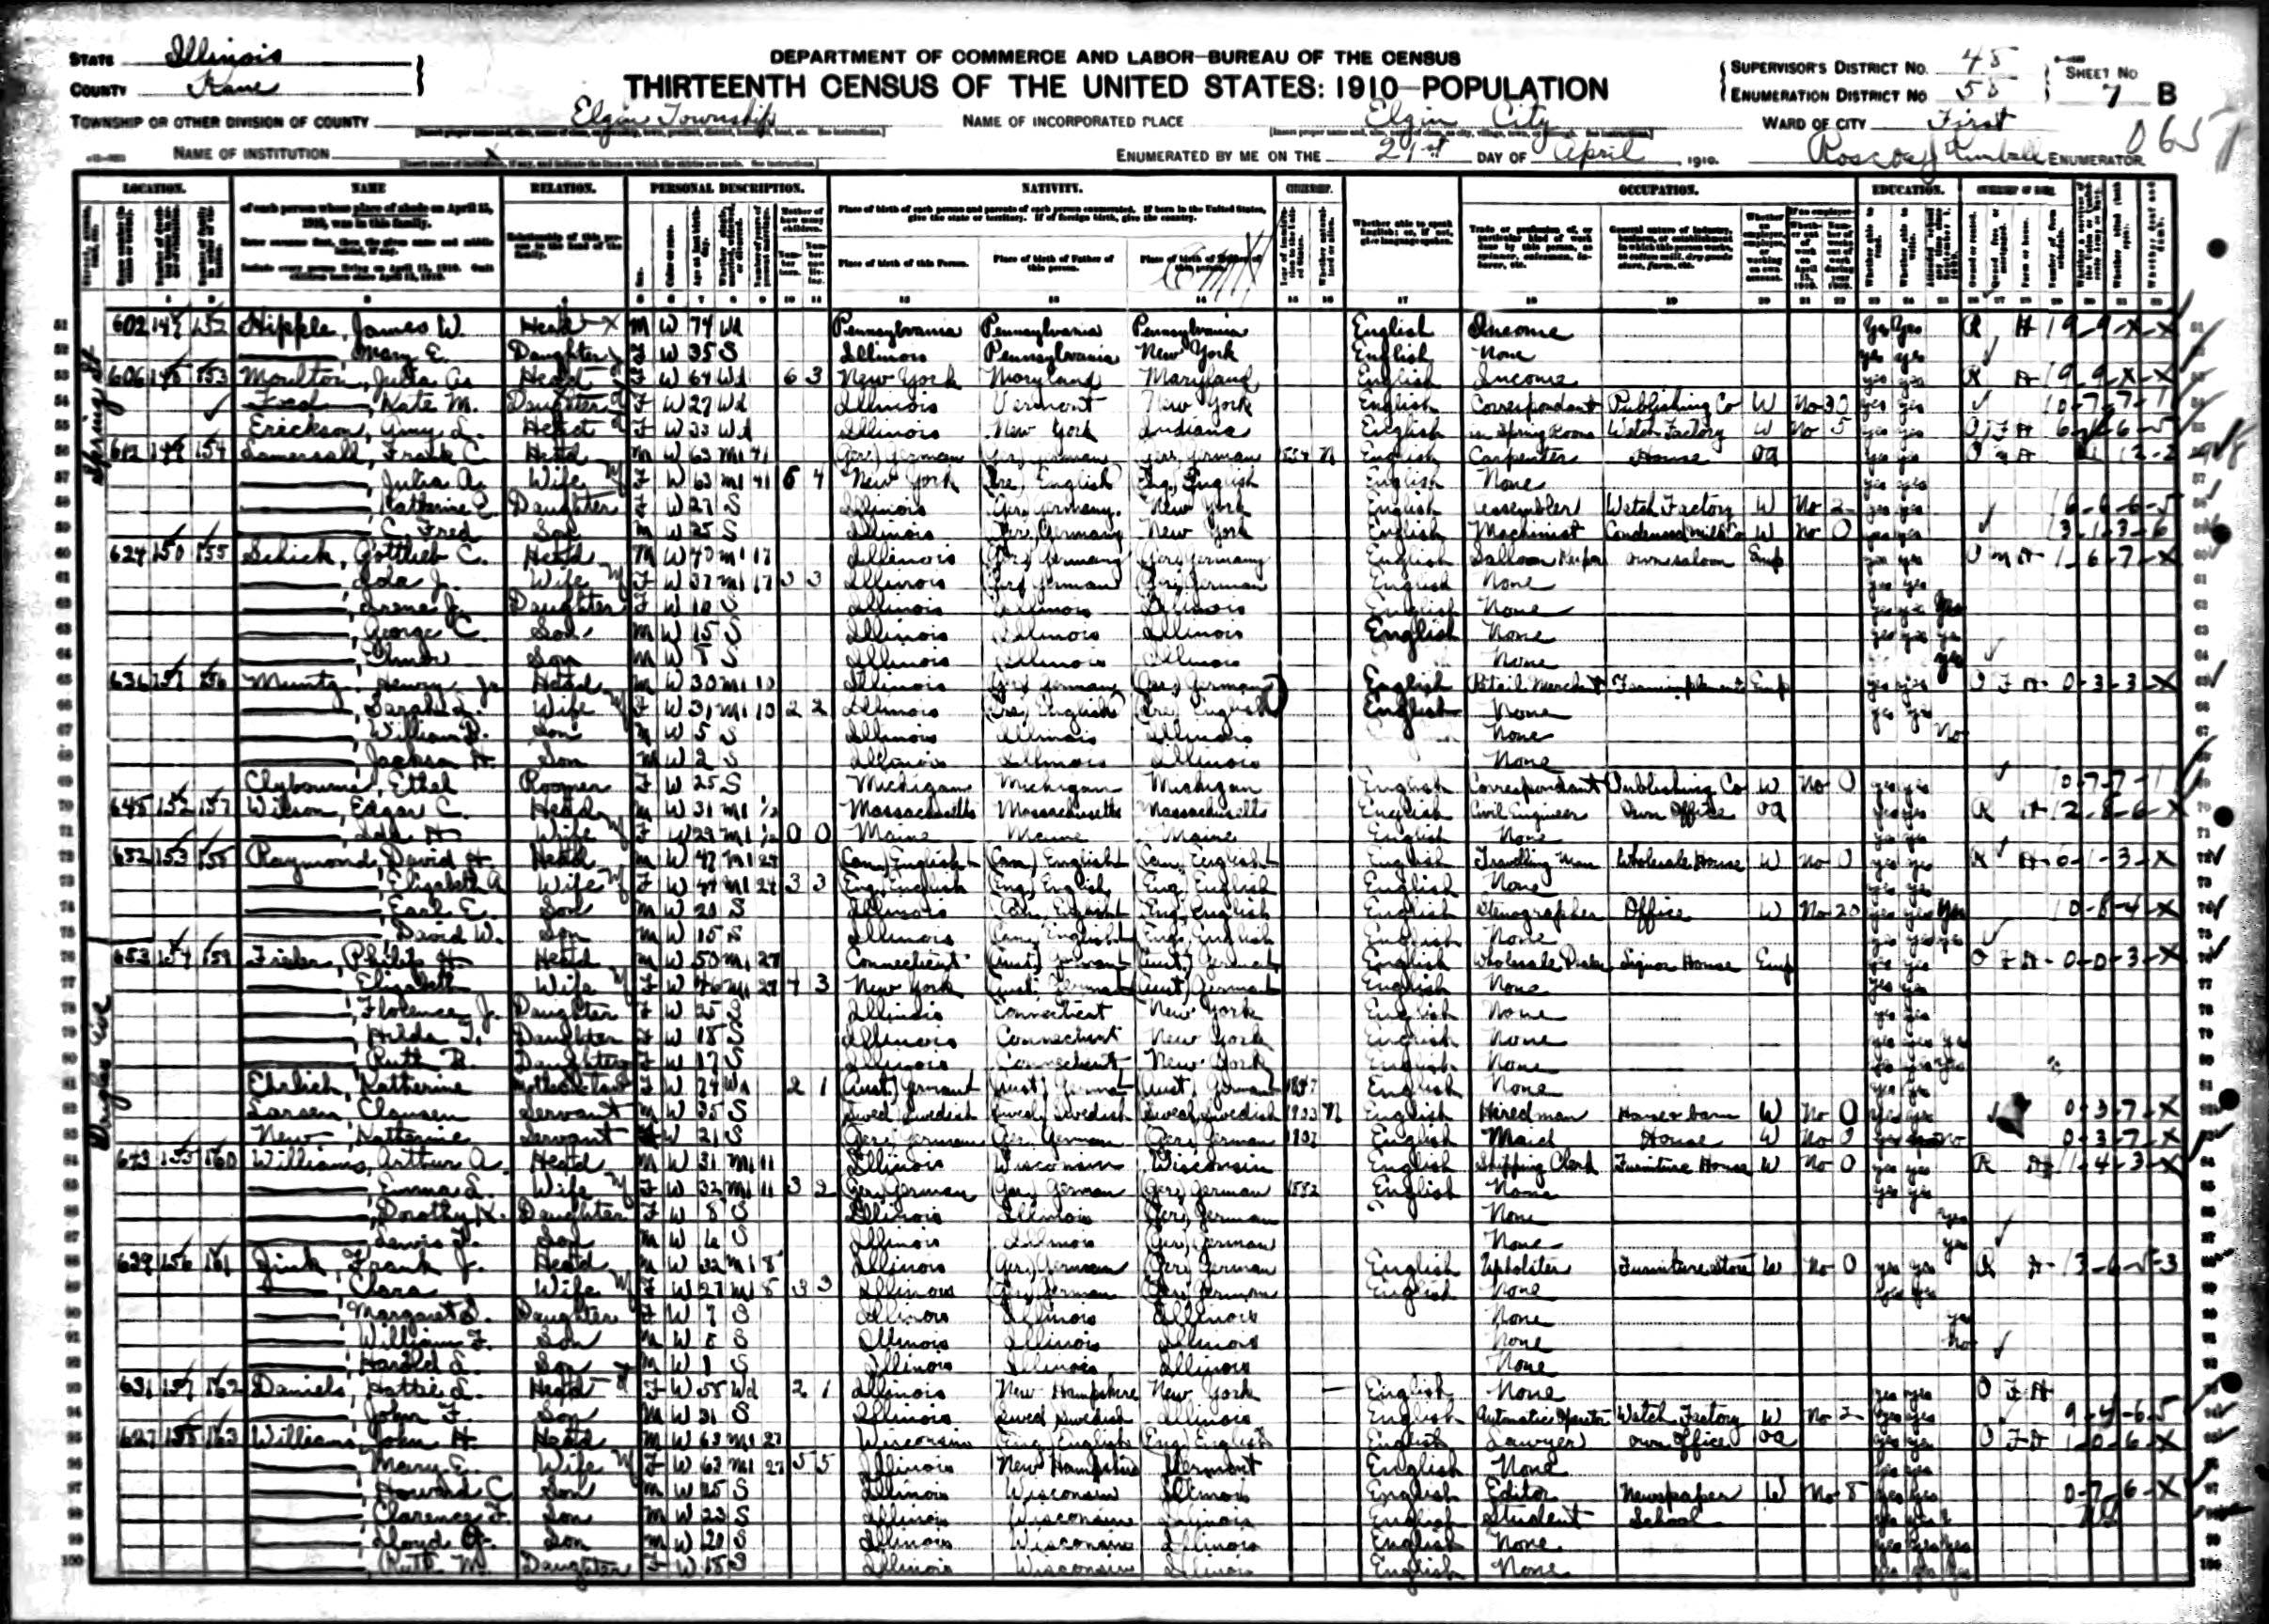 1910 US census Philip Freiler family